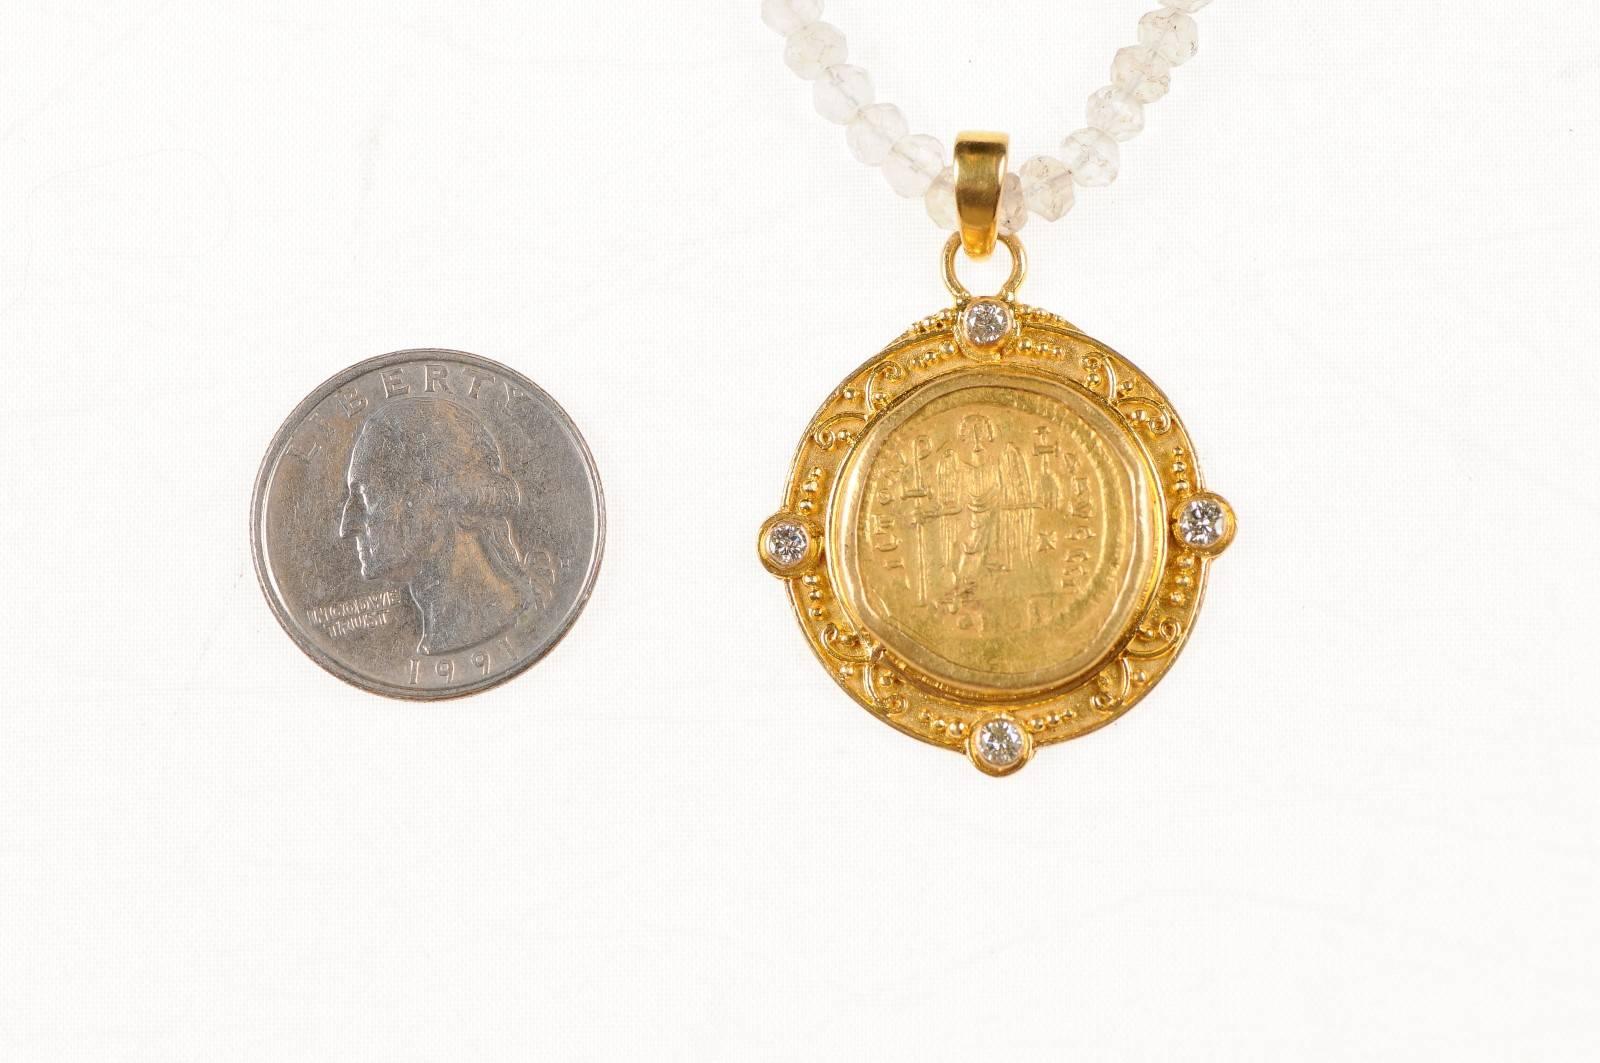 Italian Justinian I, AV Roman Coin Necklace with 22-Karat Gold Bezel and Diamond Accents